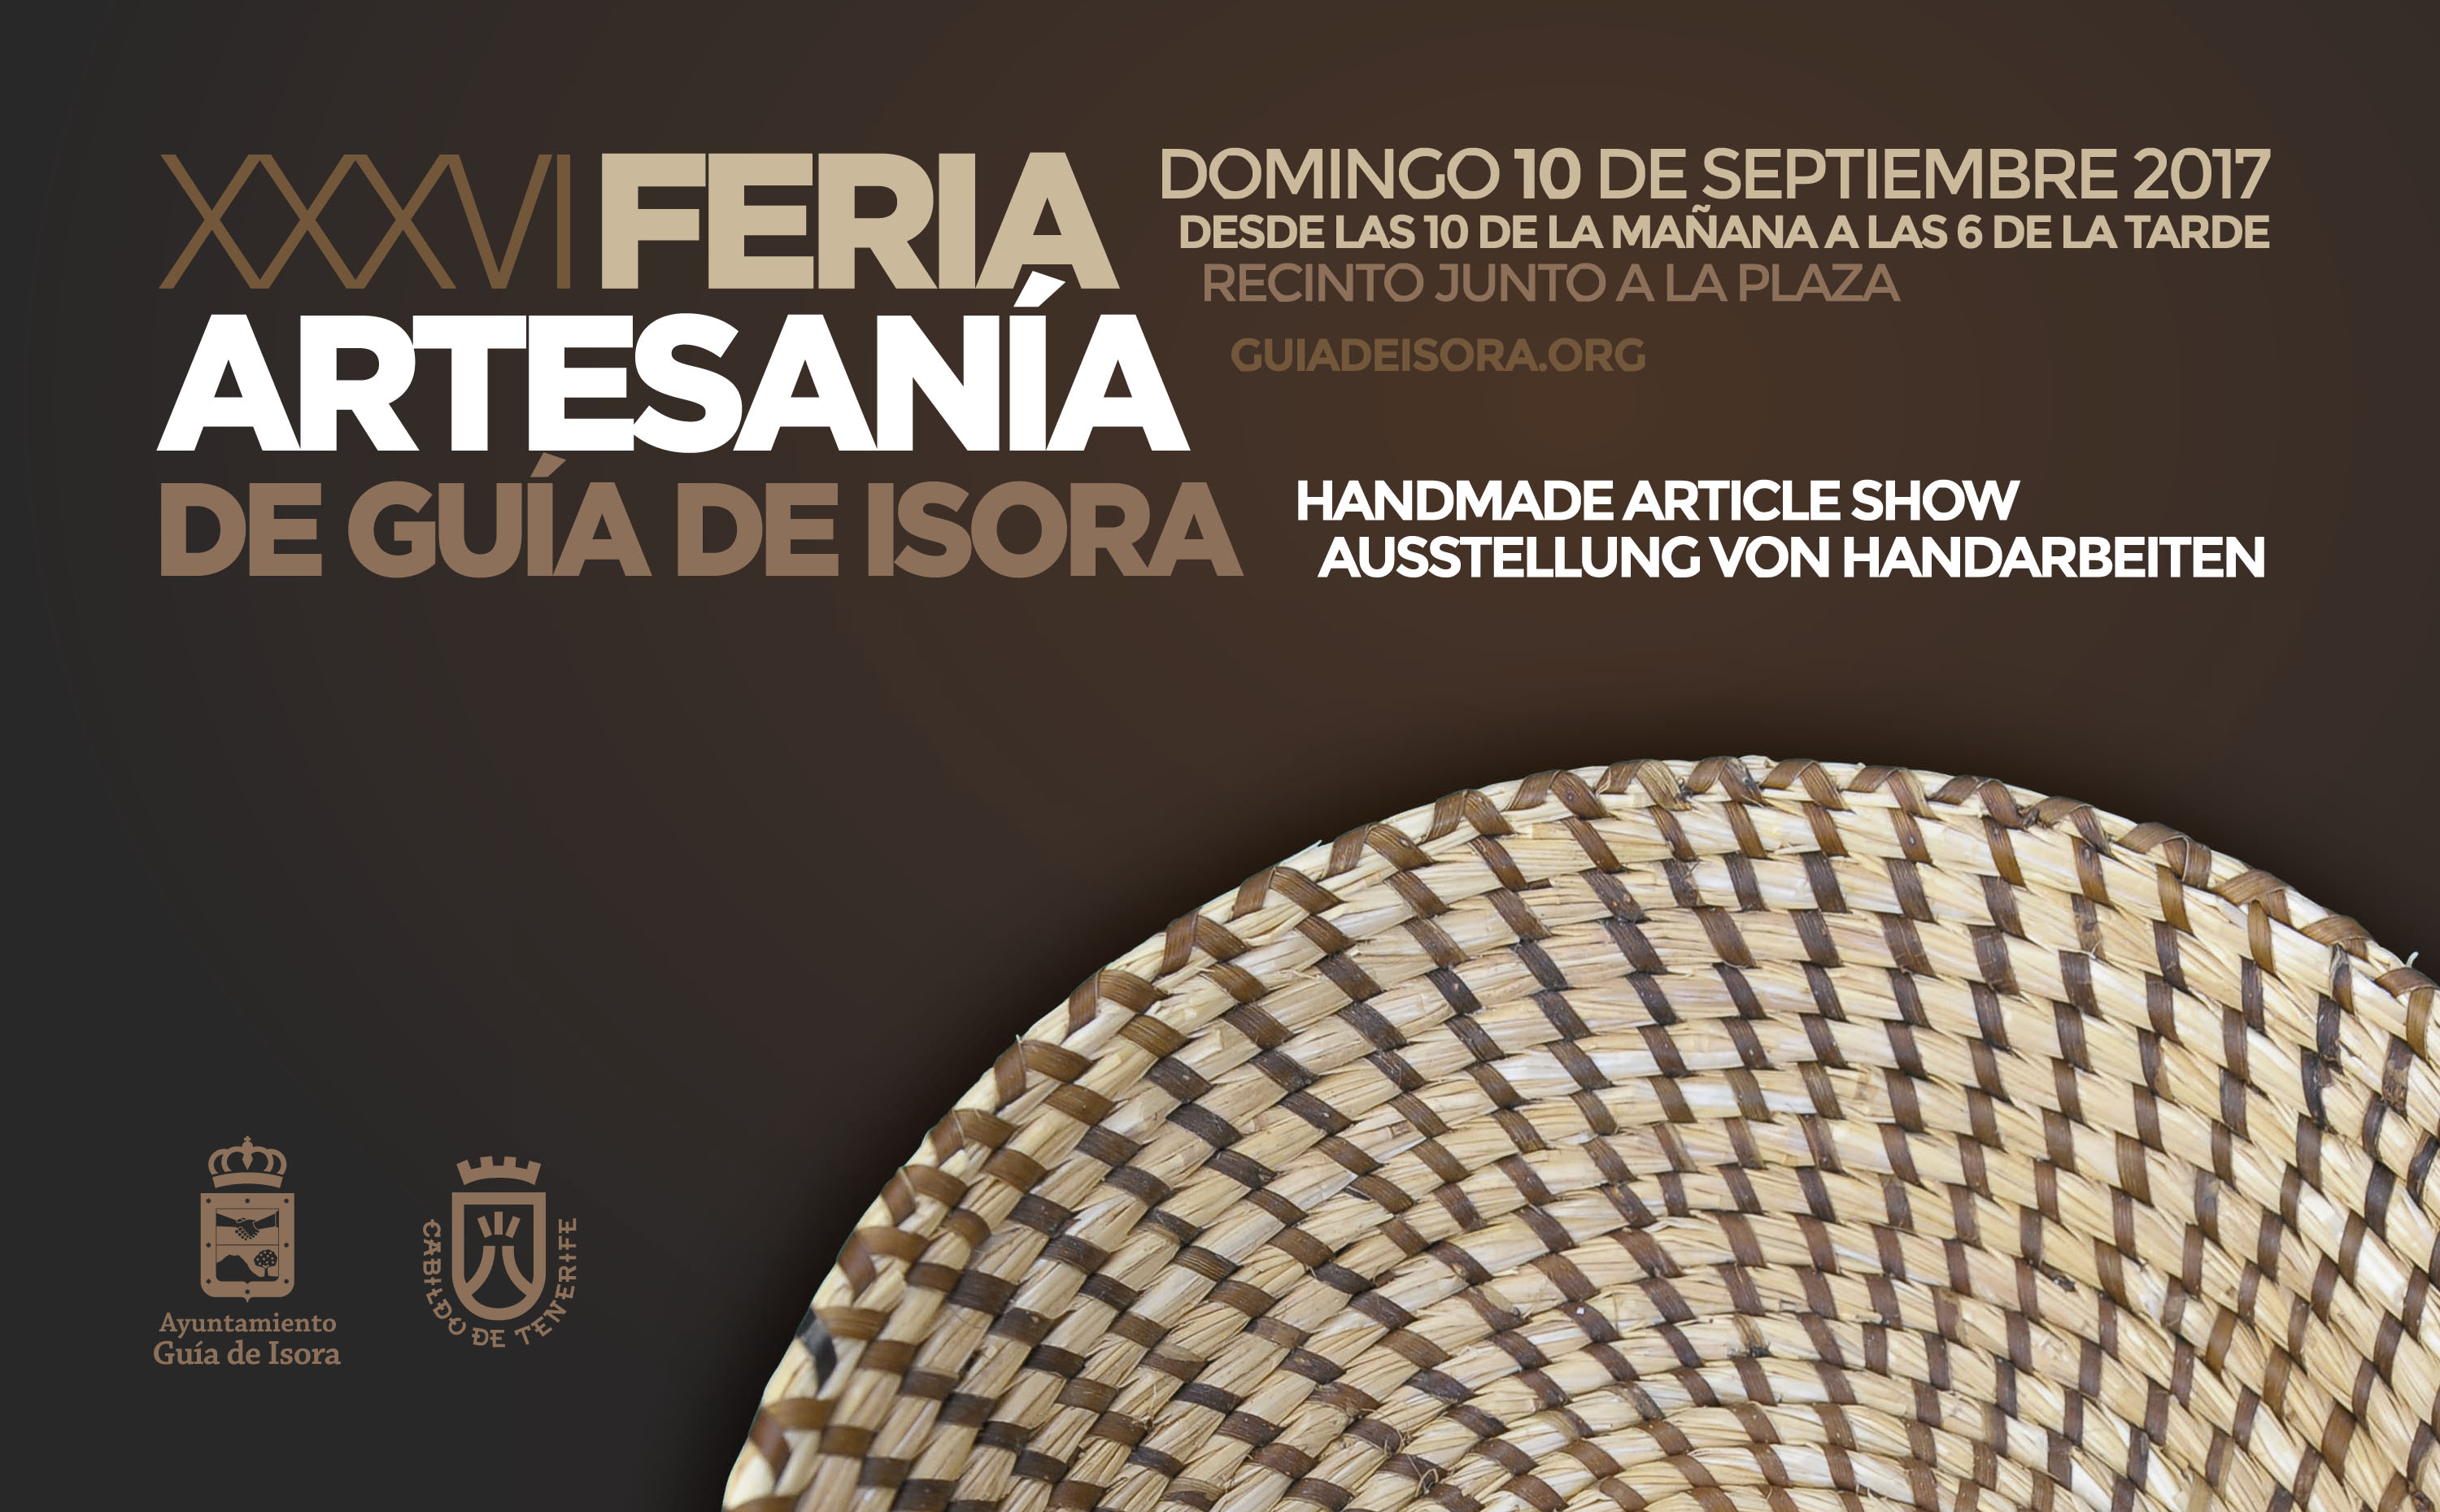 Se abre el plazo para inscripción de artesanos en la XXXVI Feria de Artesanía de Guía de Isora